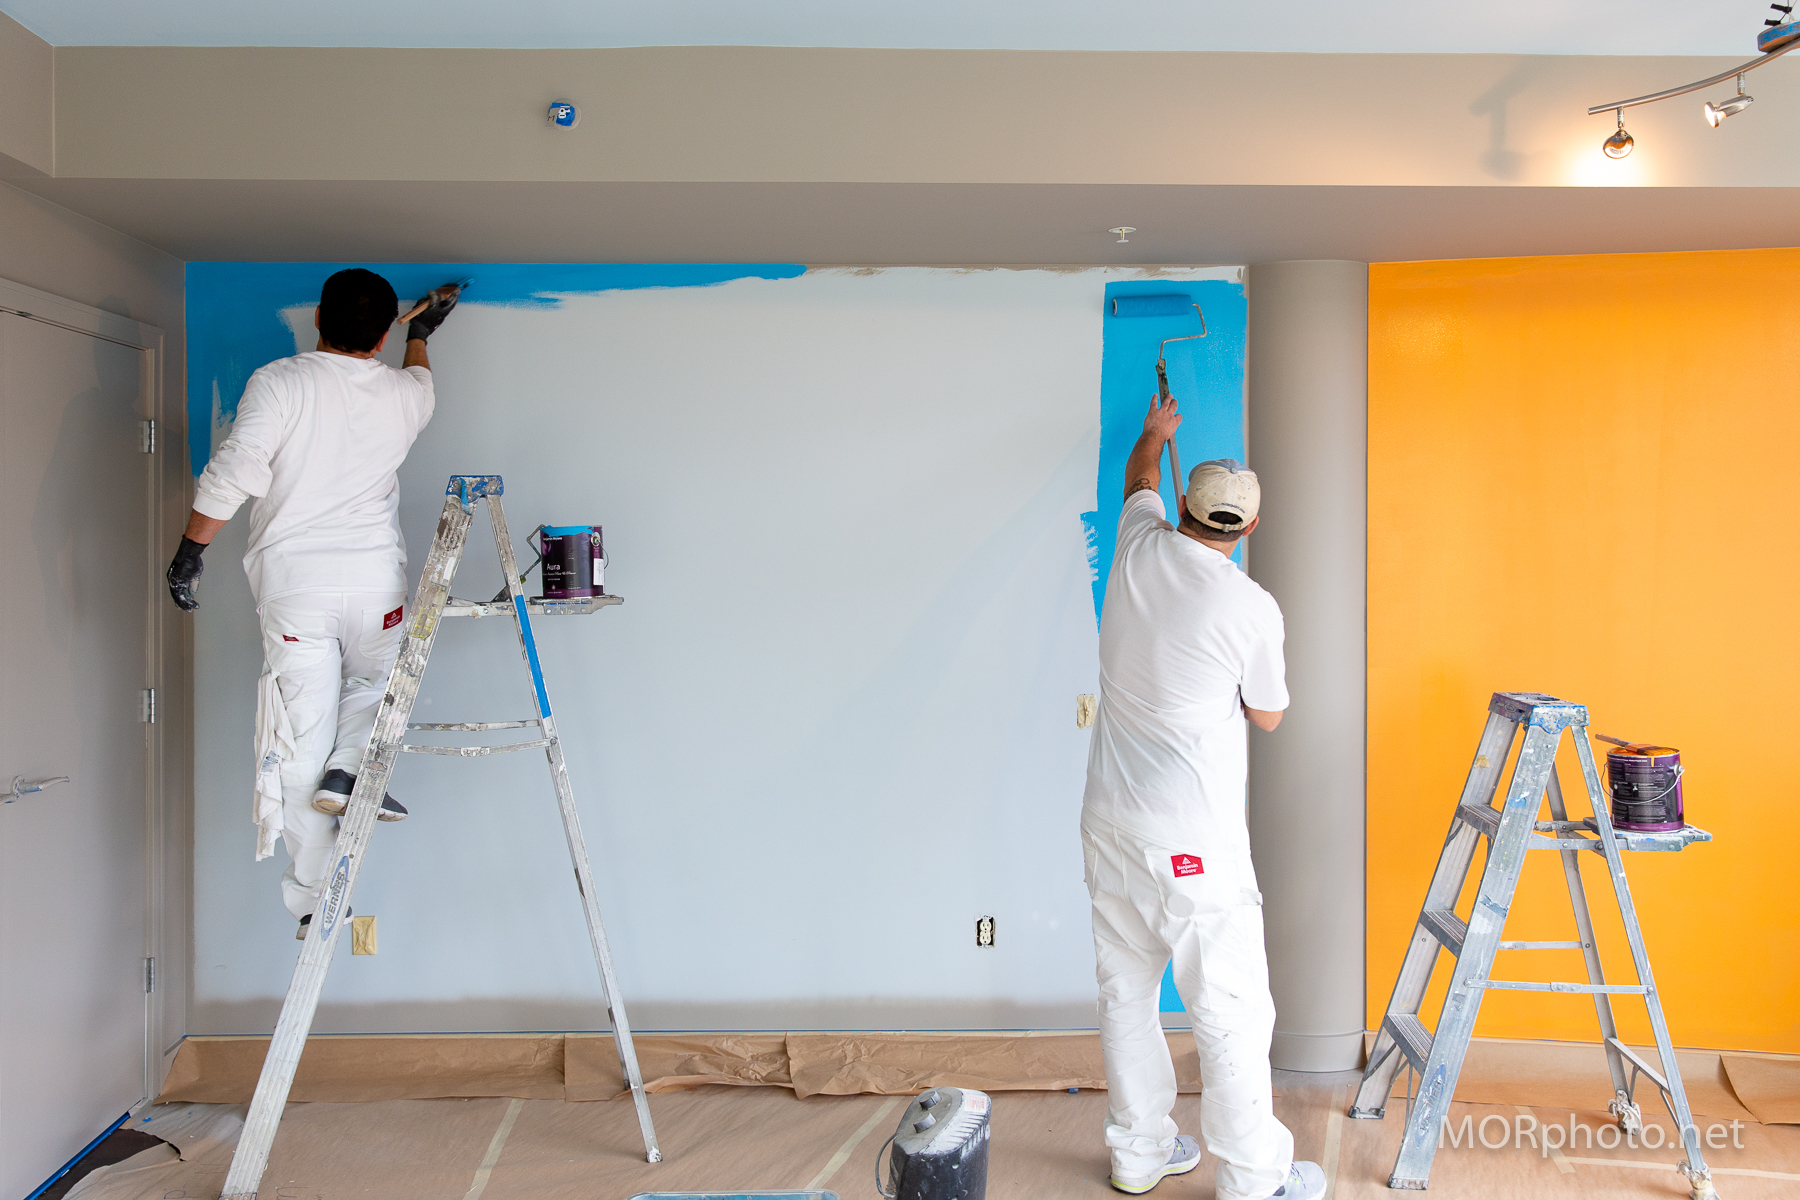 SISU Painting | Sisu Paint Team – Hard at Work